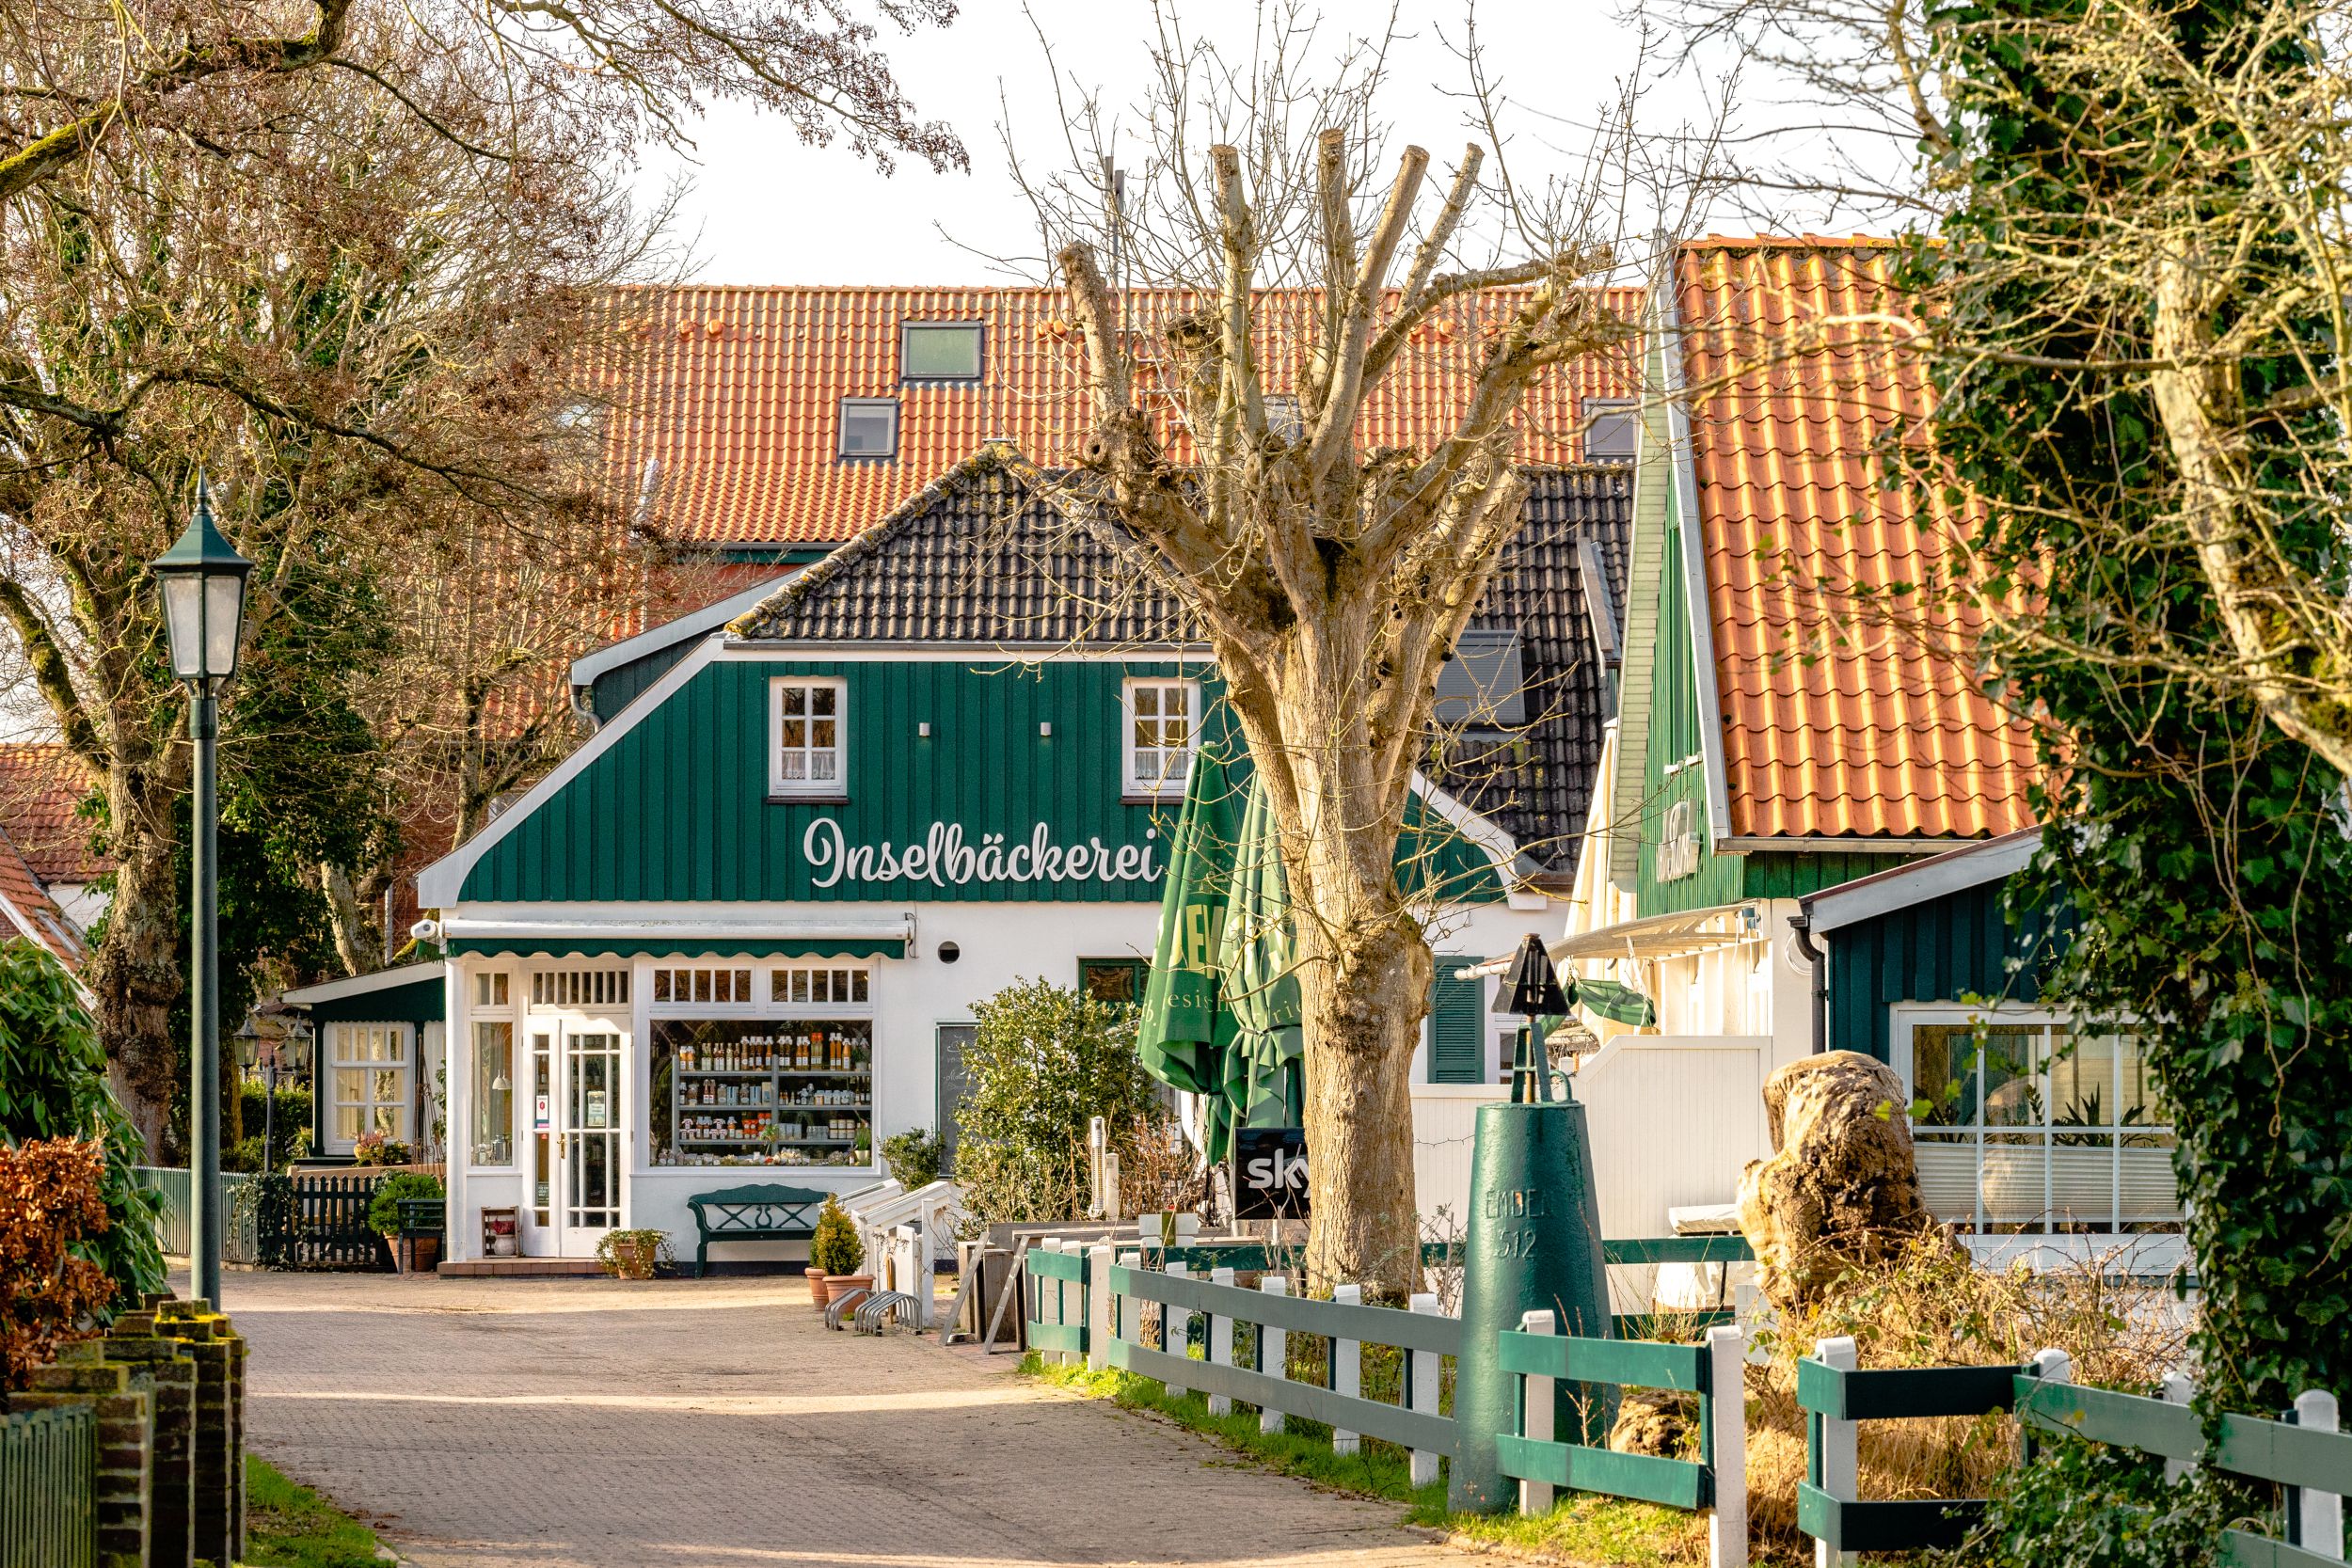 Blick auf die Inselbäckerei im Spiekerooger Dorf.